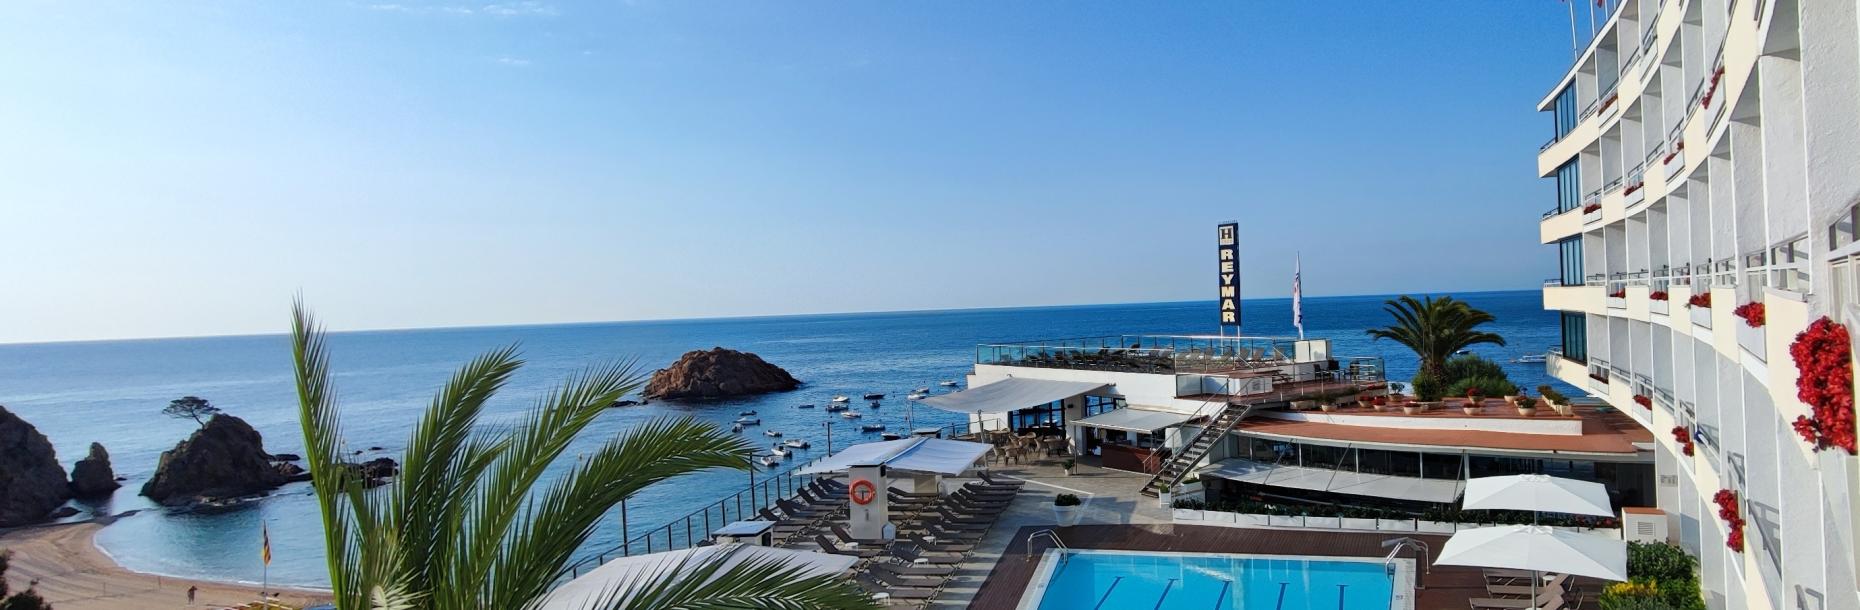 GRAN HOTEL REYMAR ****s: Your luxury hotel in Tossa de Mar, Costa Brava